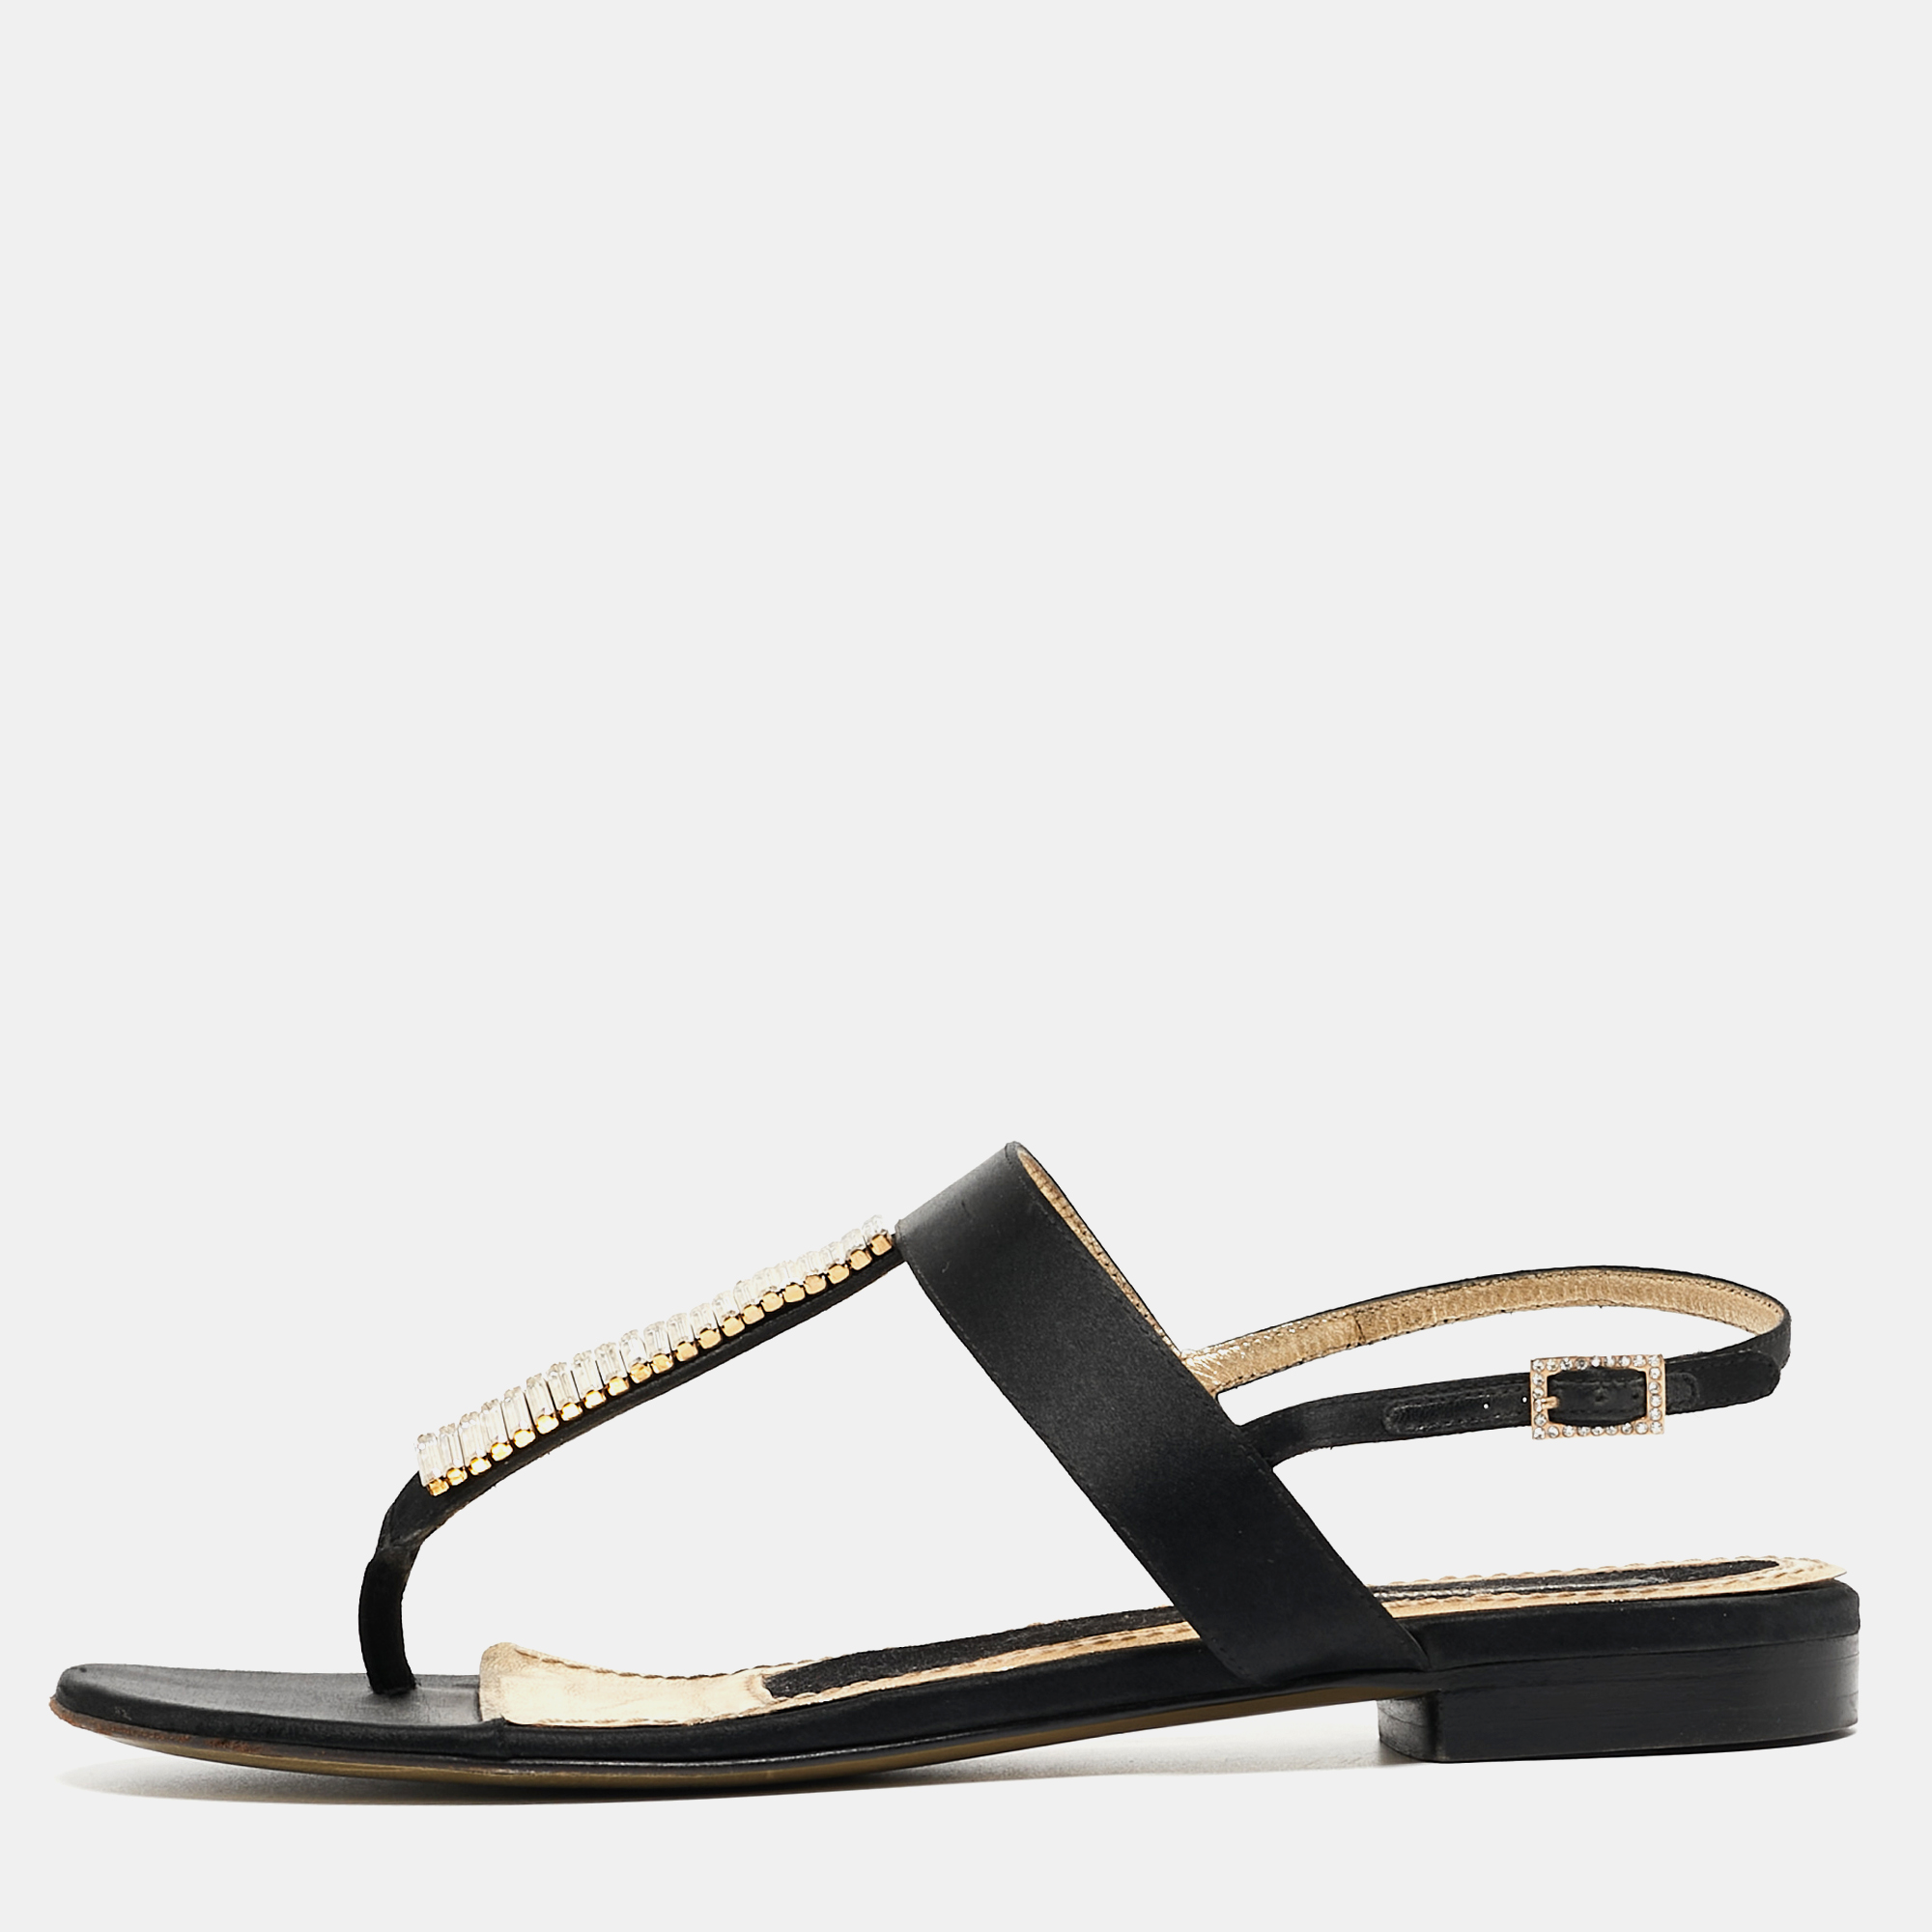 

Dolce & Gabbana Black Satin Crystal Embellished Thong Flat Sandals Size